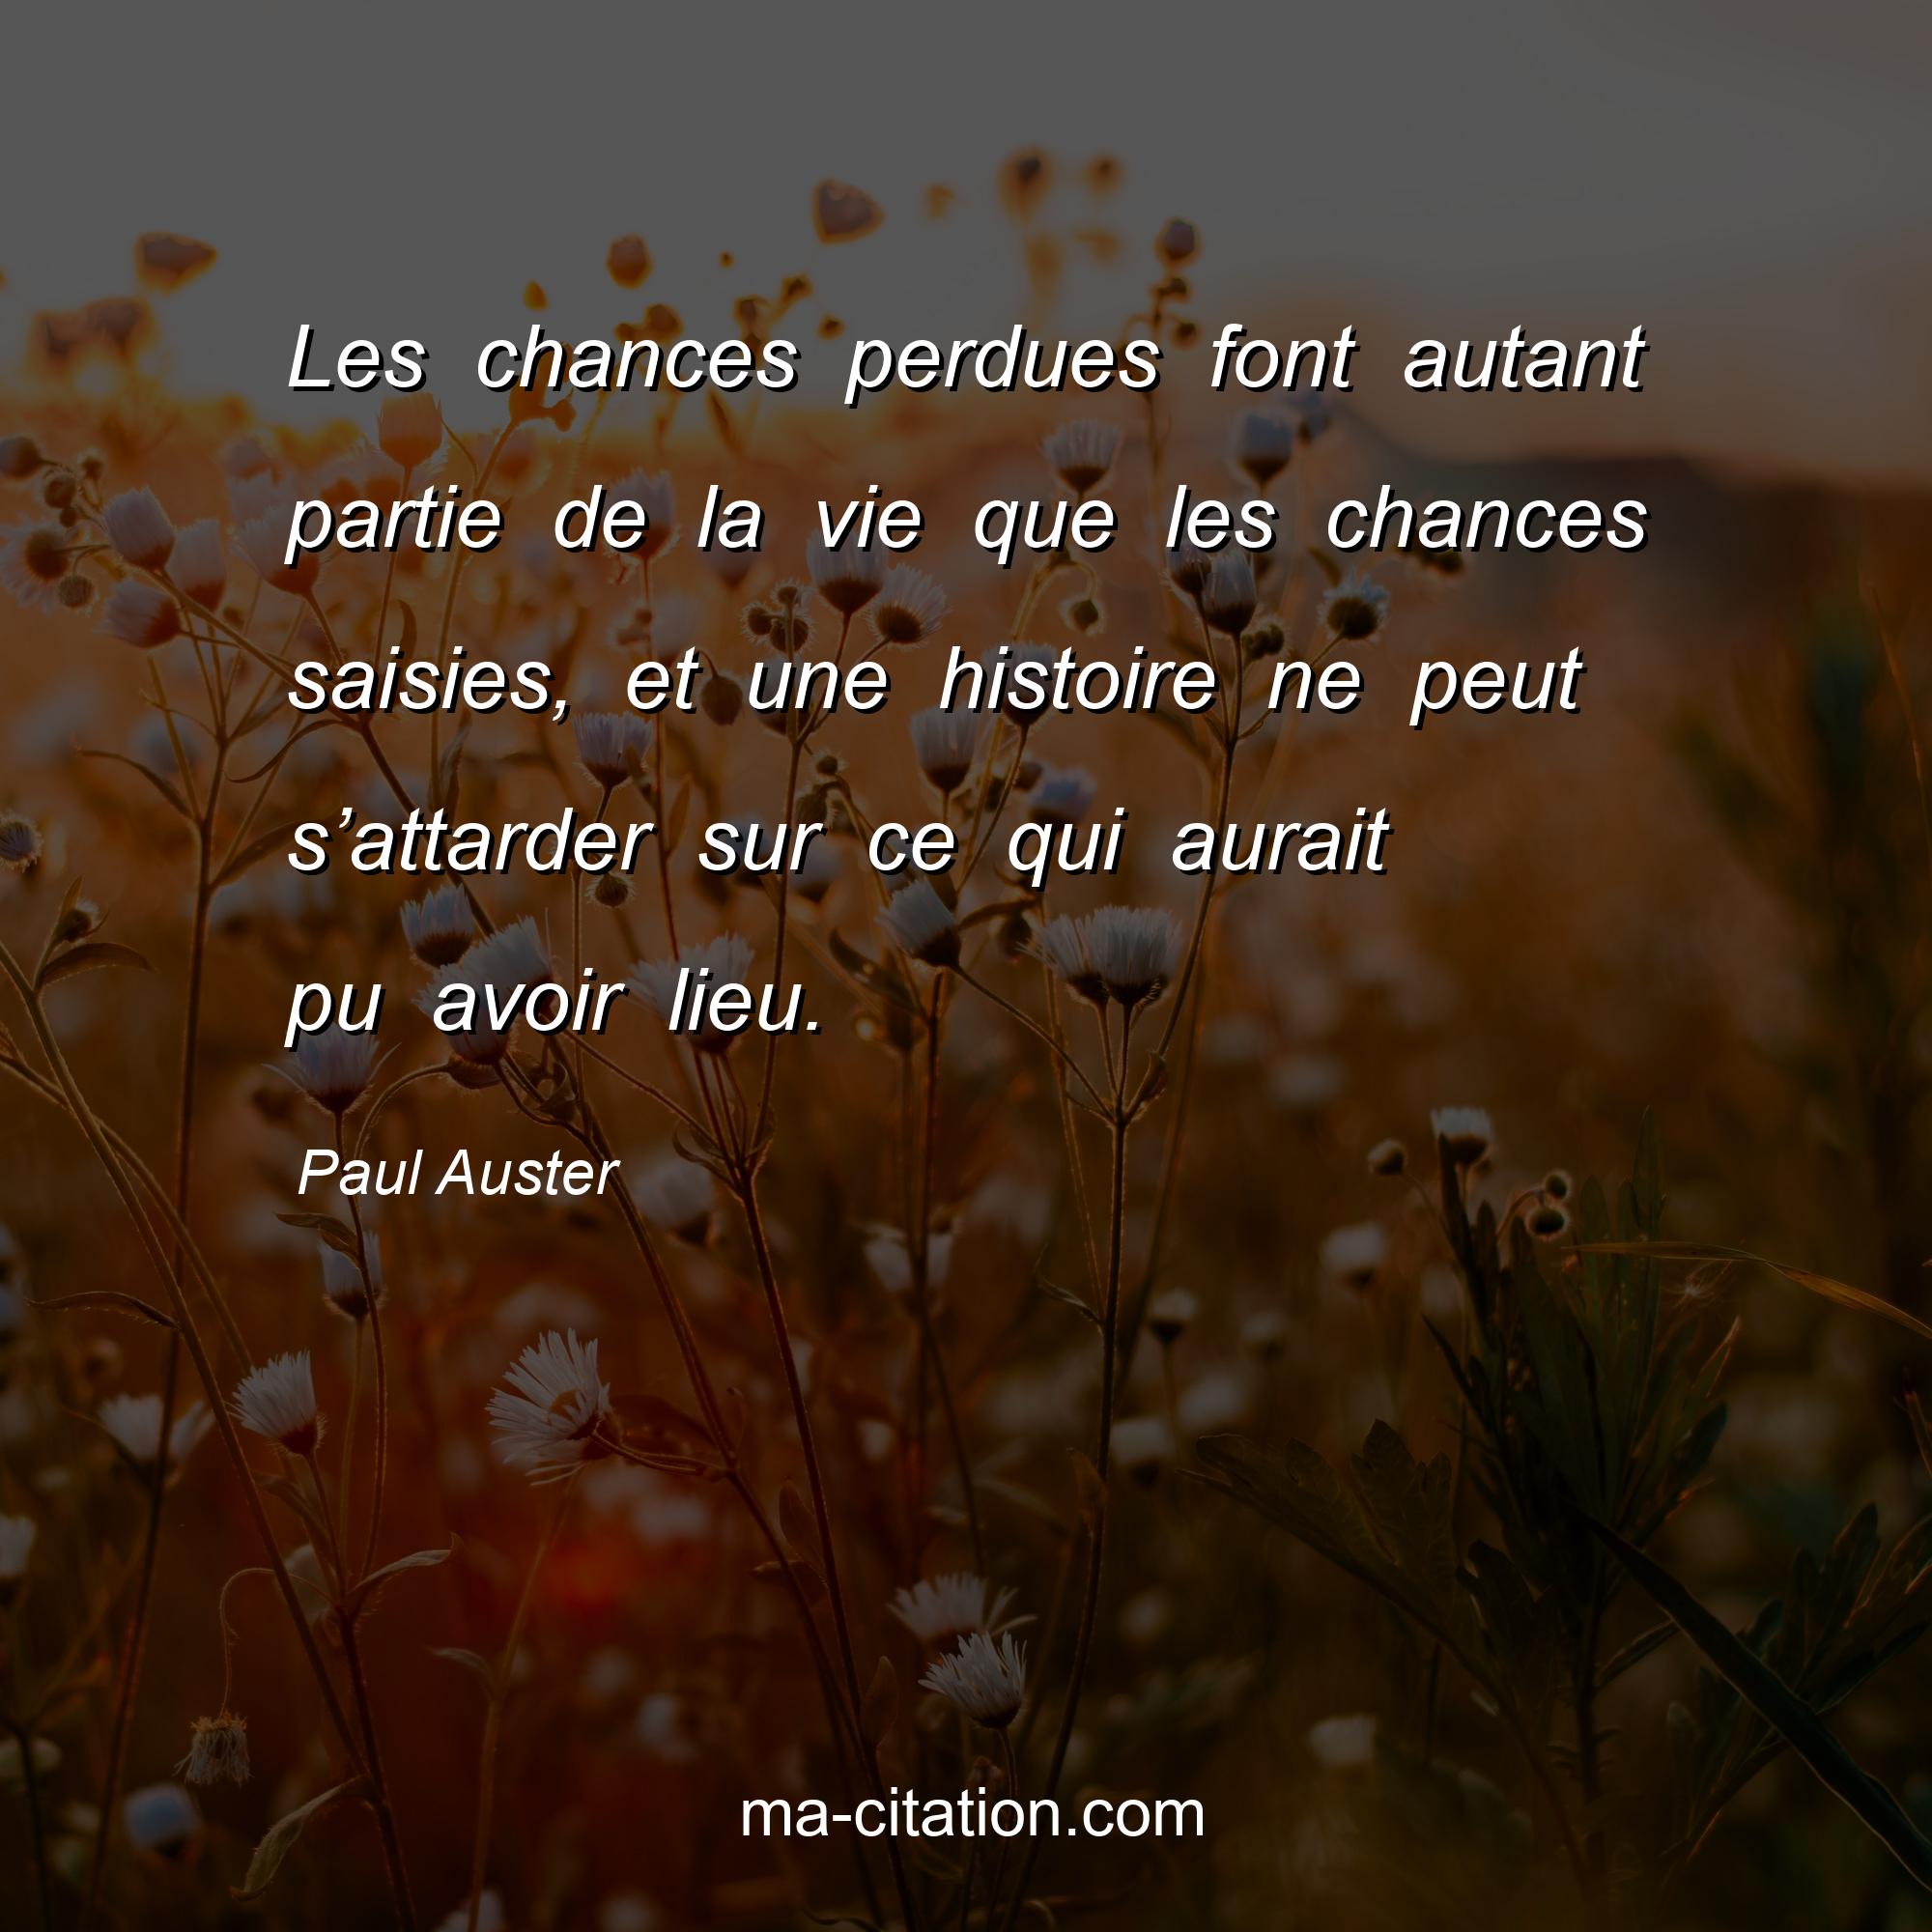 Paul Auster : Les chances perdues font autant partie de la vie que les chances saisies, et une histoire ne peut s’attarder sur ce qui aurait pu avoir lieu.